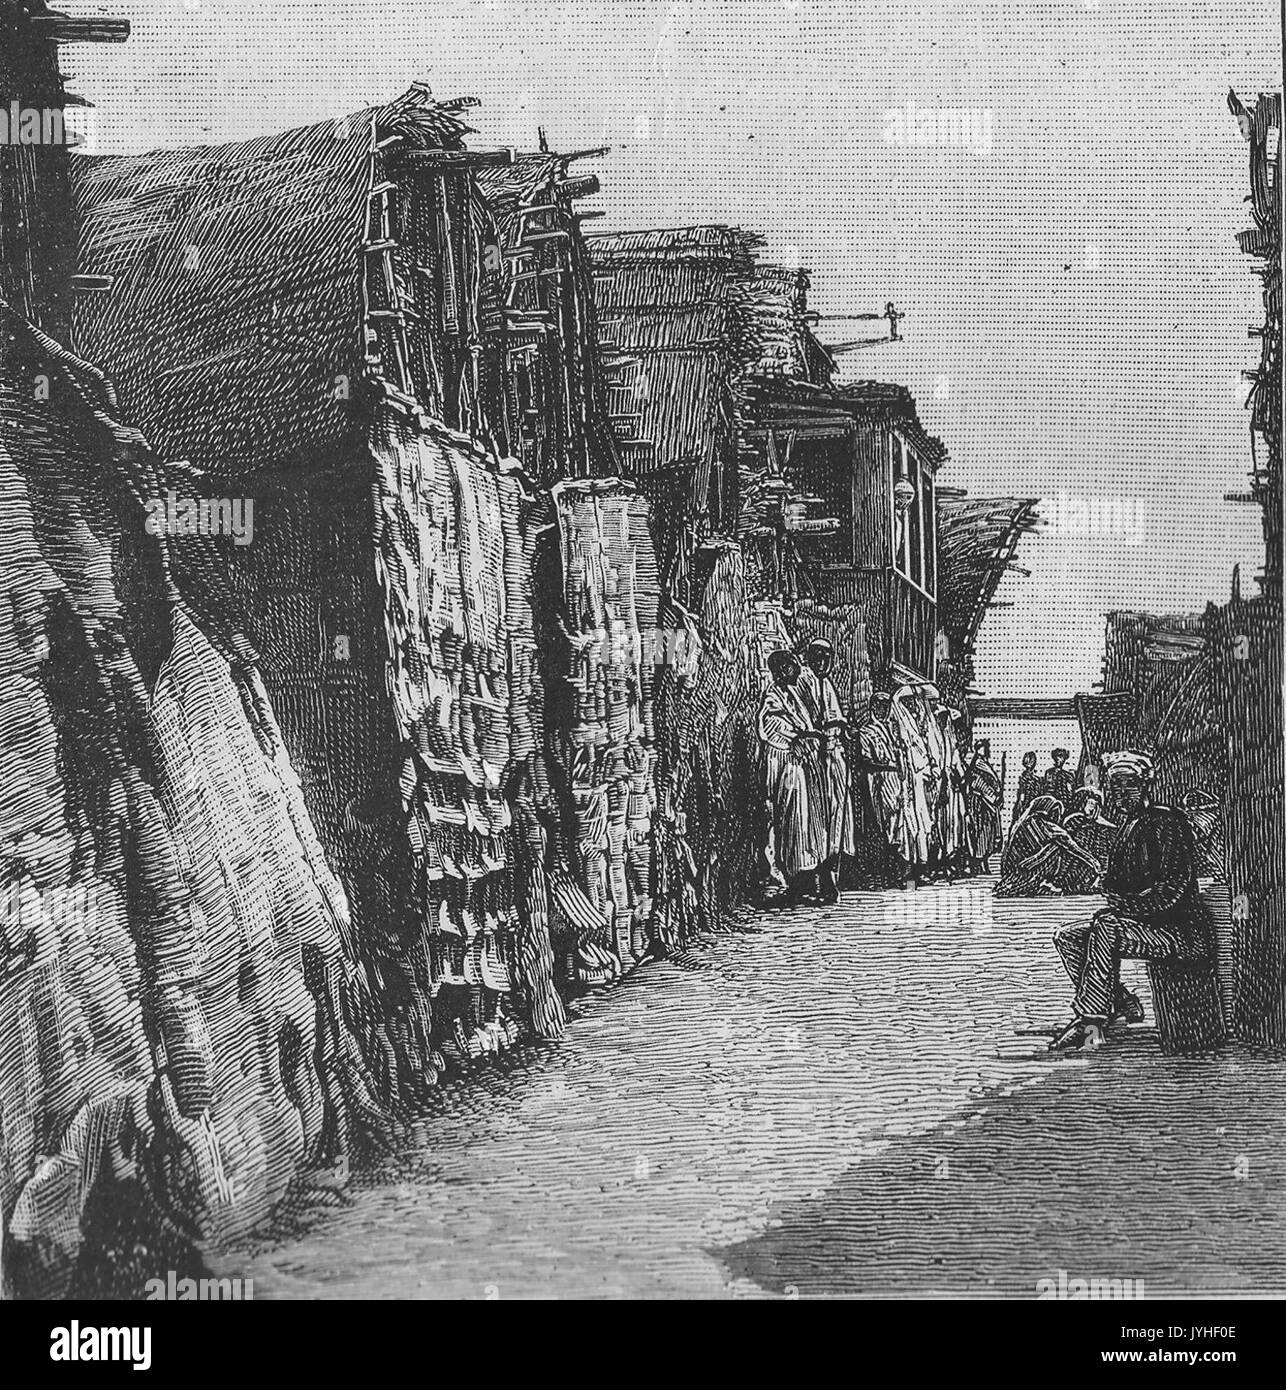 Une rue de Berbera au cours de la fin du xixe siècle Banque D'Images